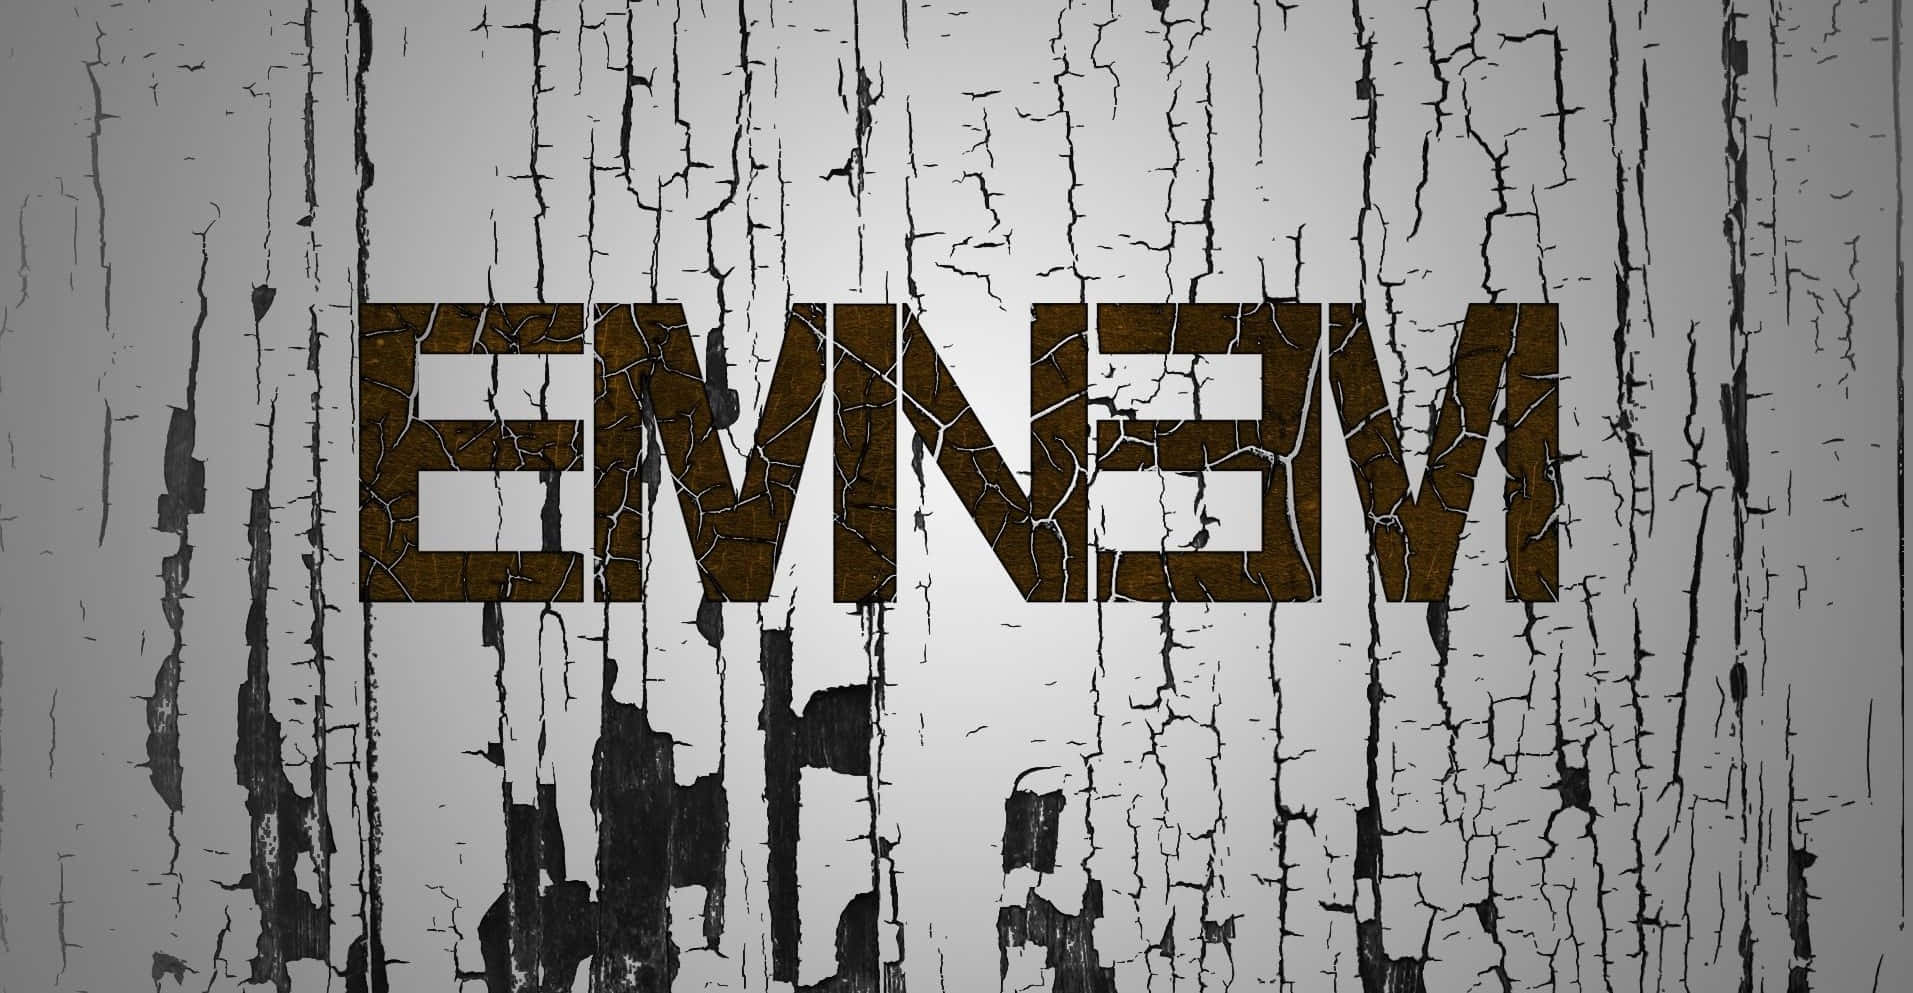 Papelde Parede De Eminem 1913 X 993